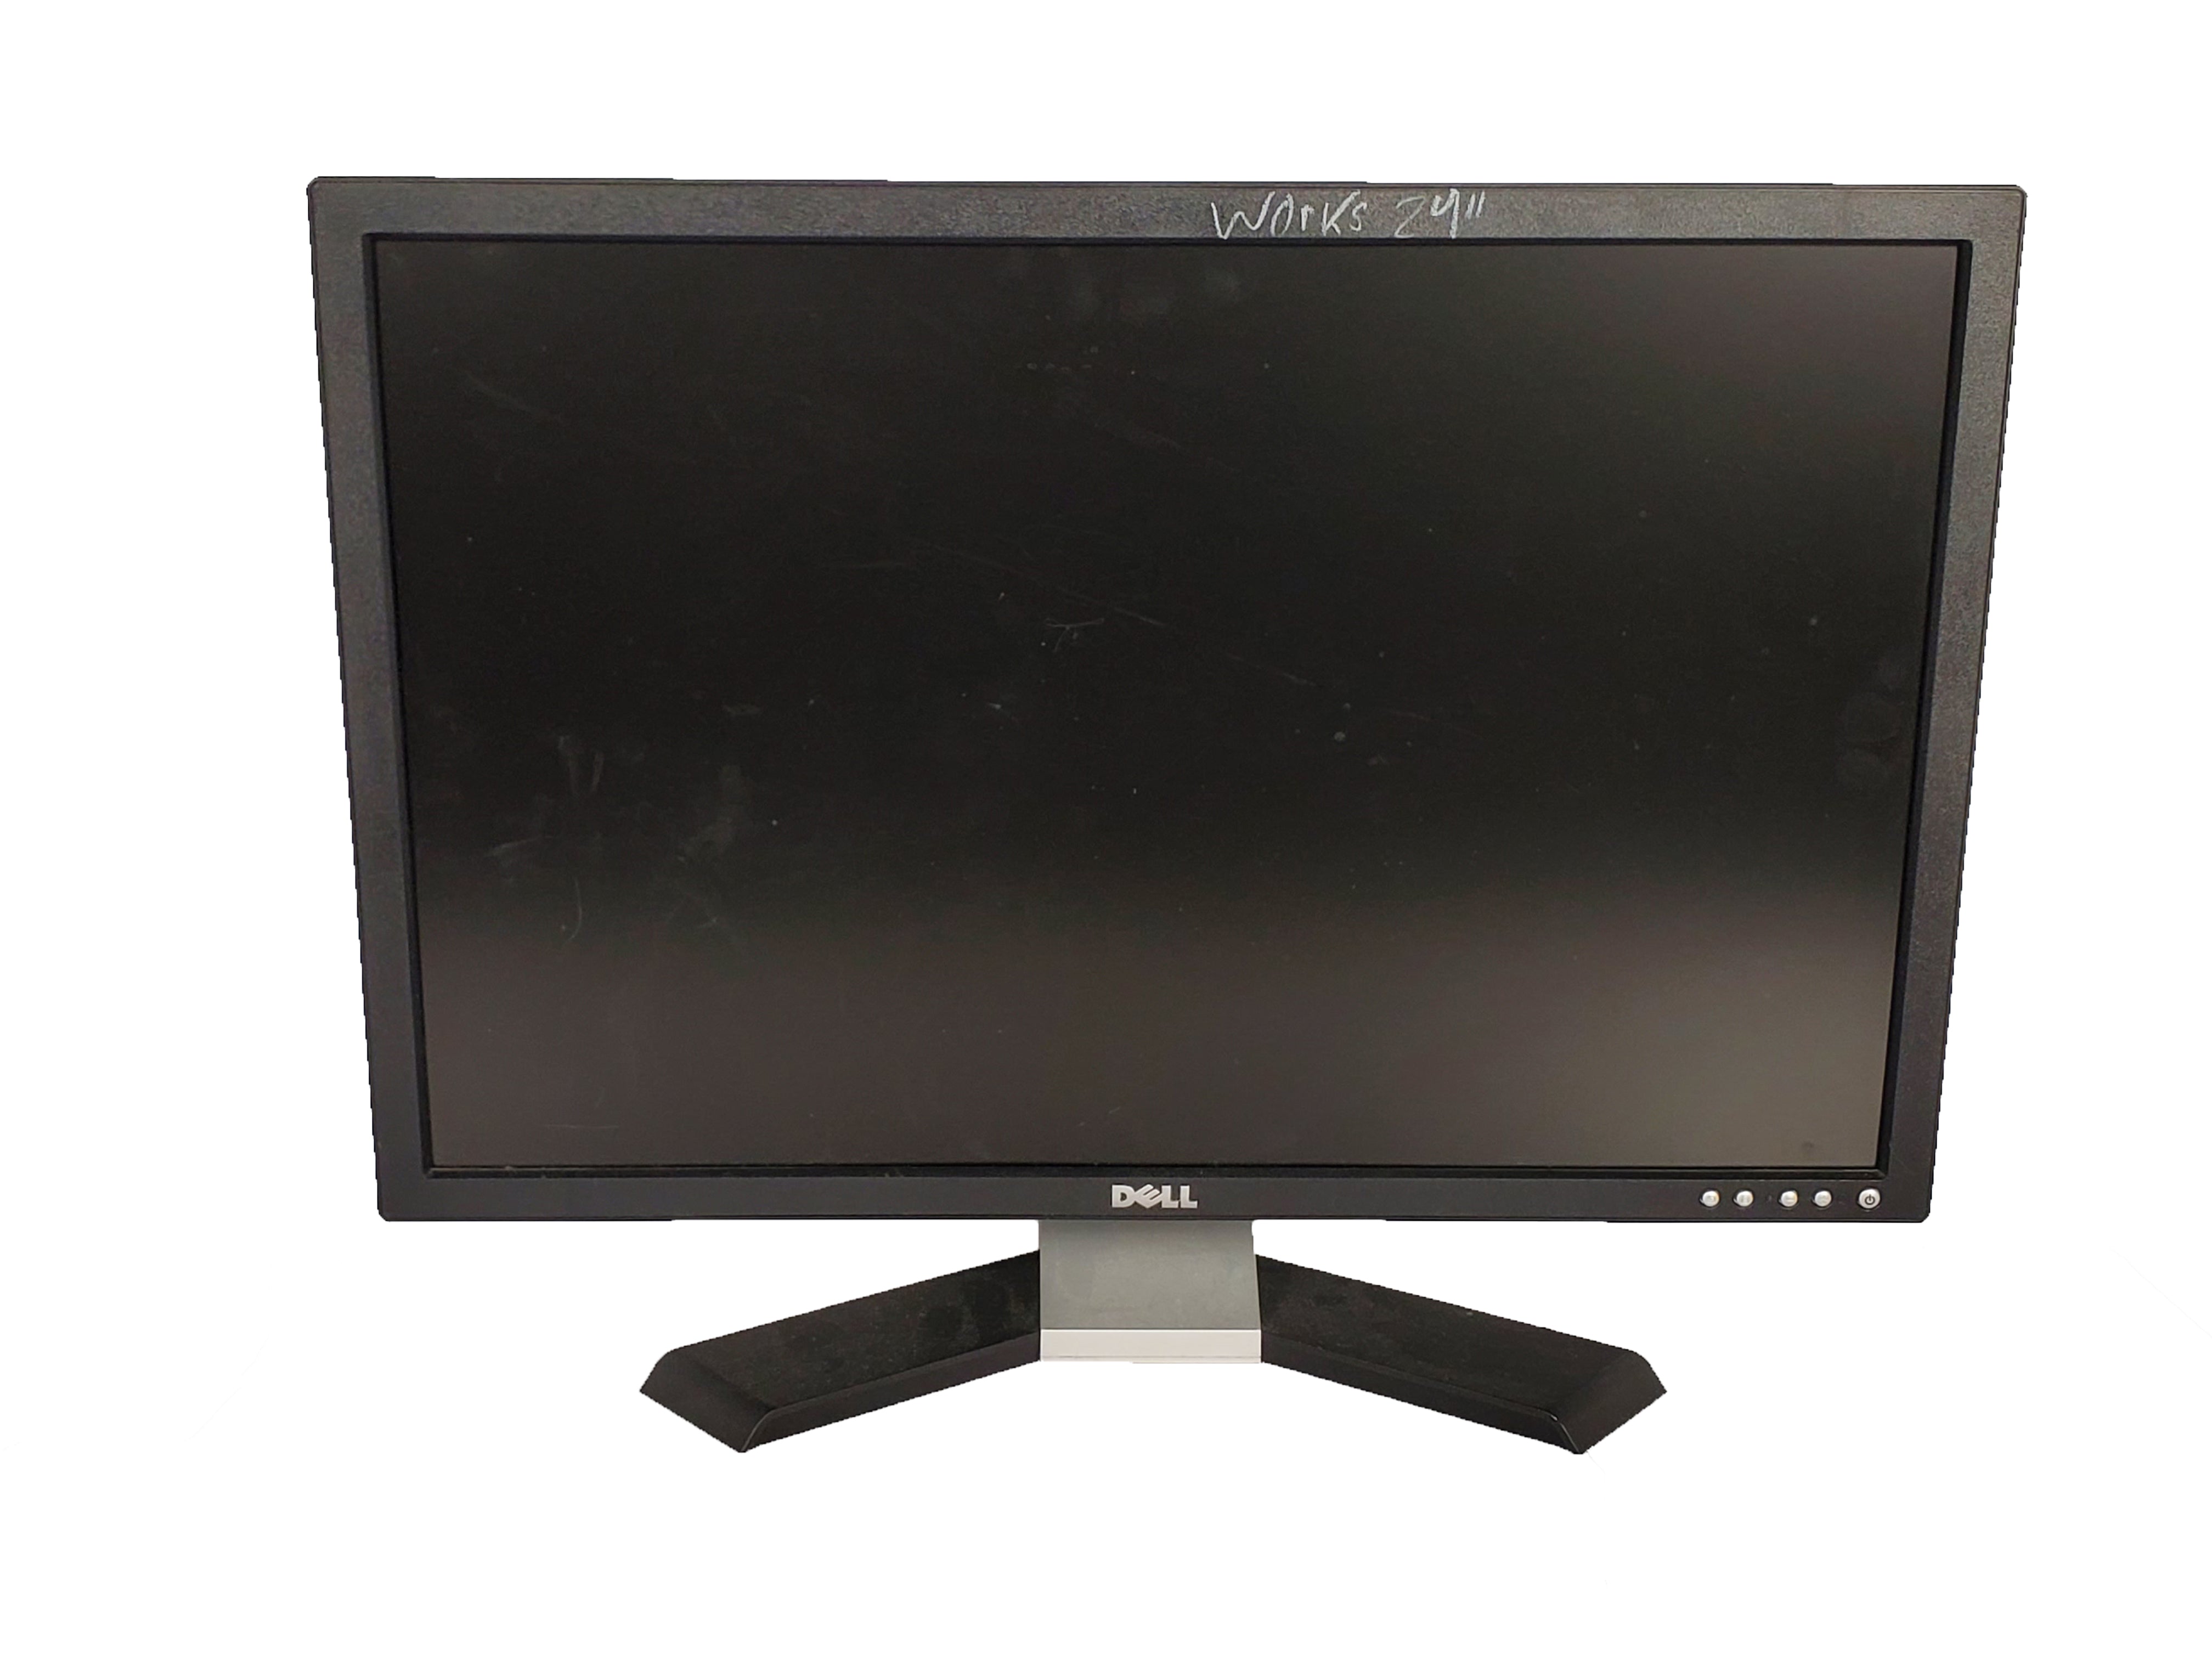 Dell E248WFPb 24" Widescreen LCD Monitor